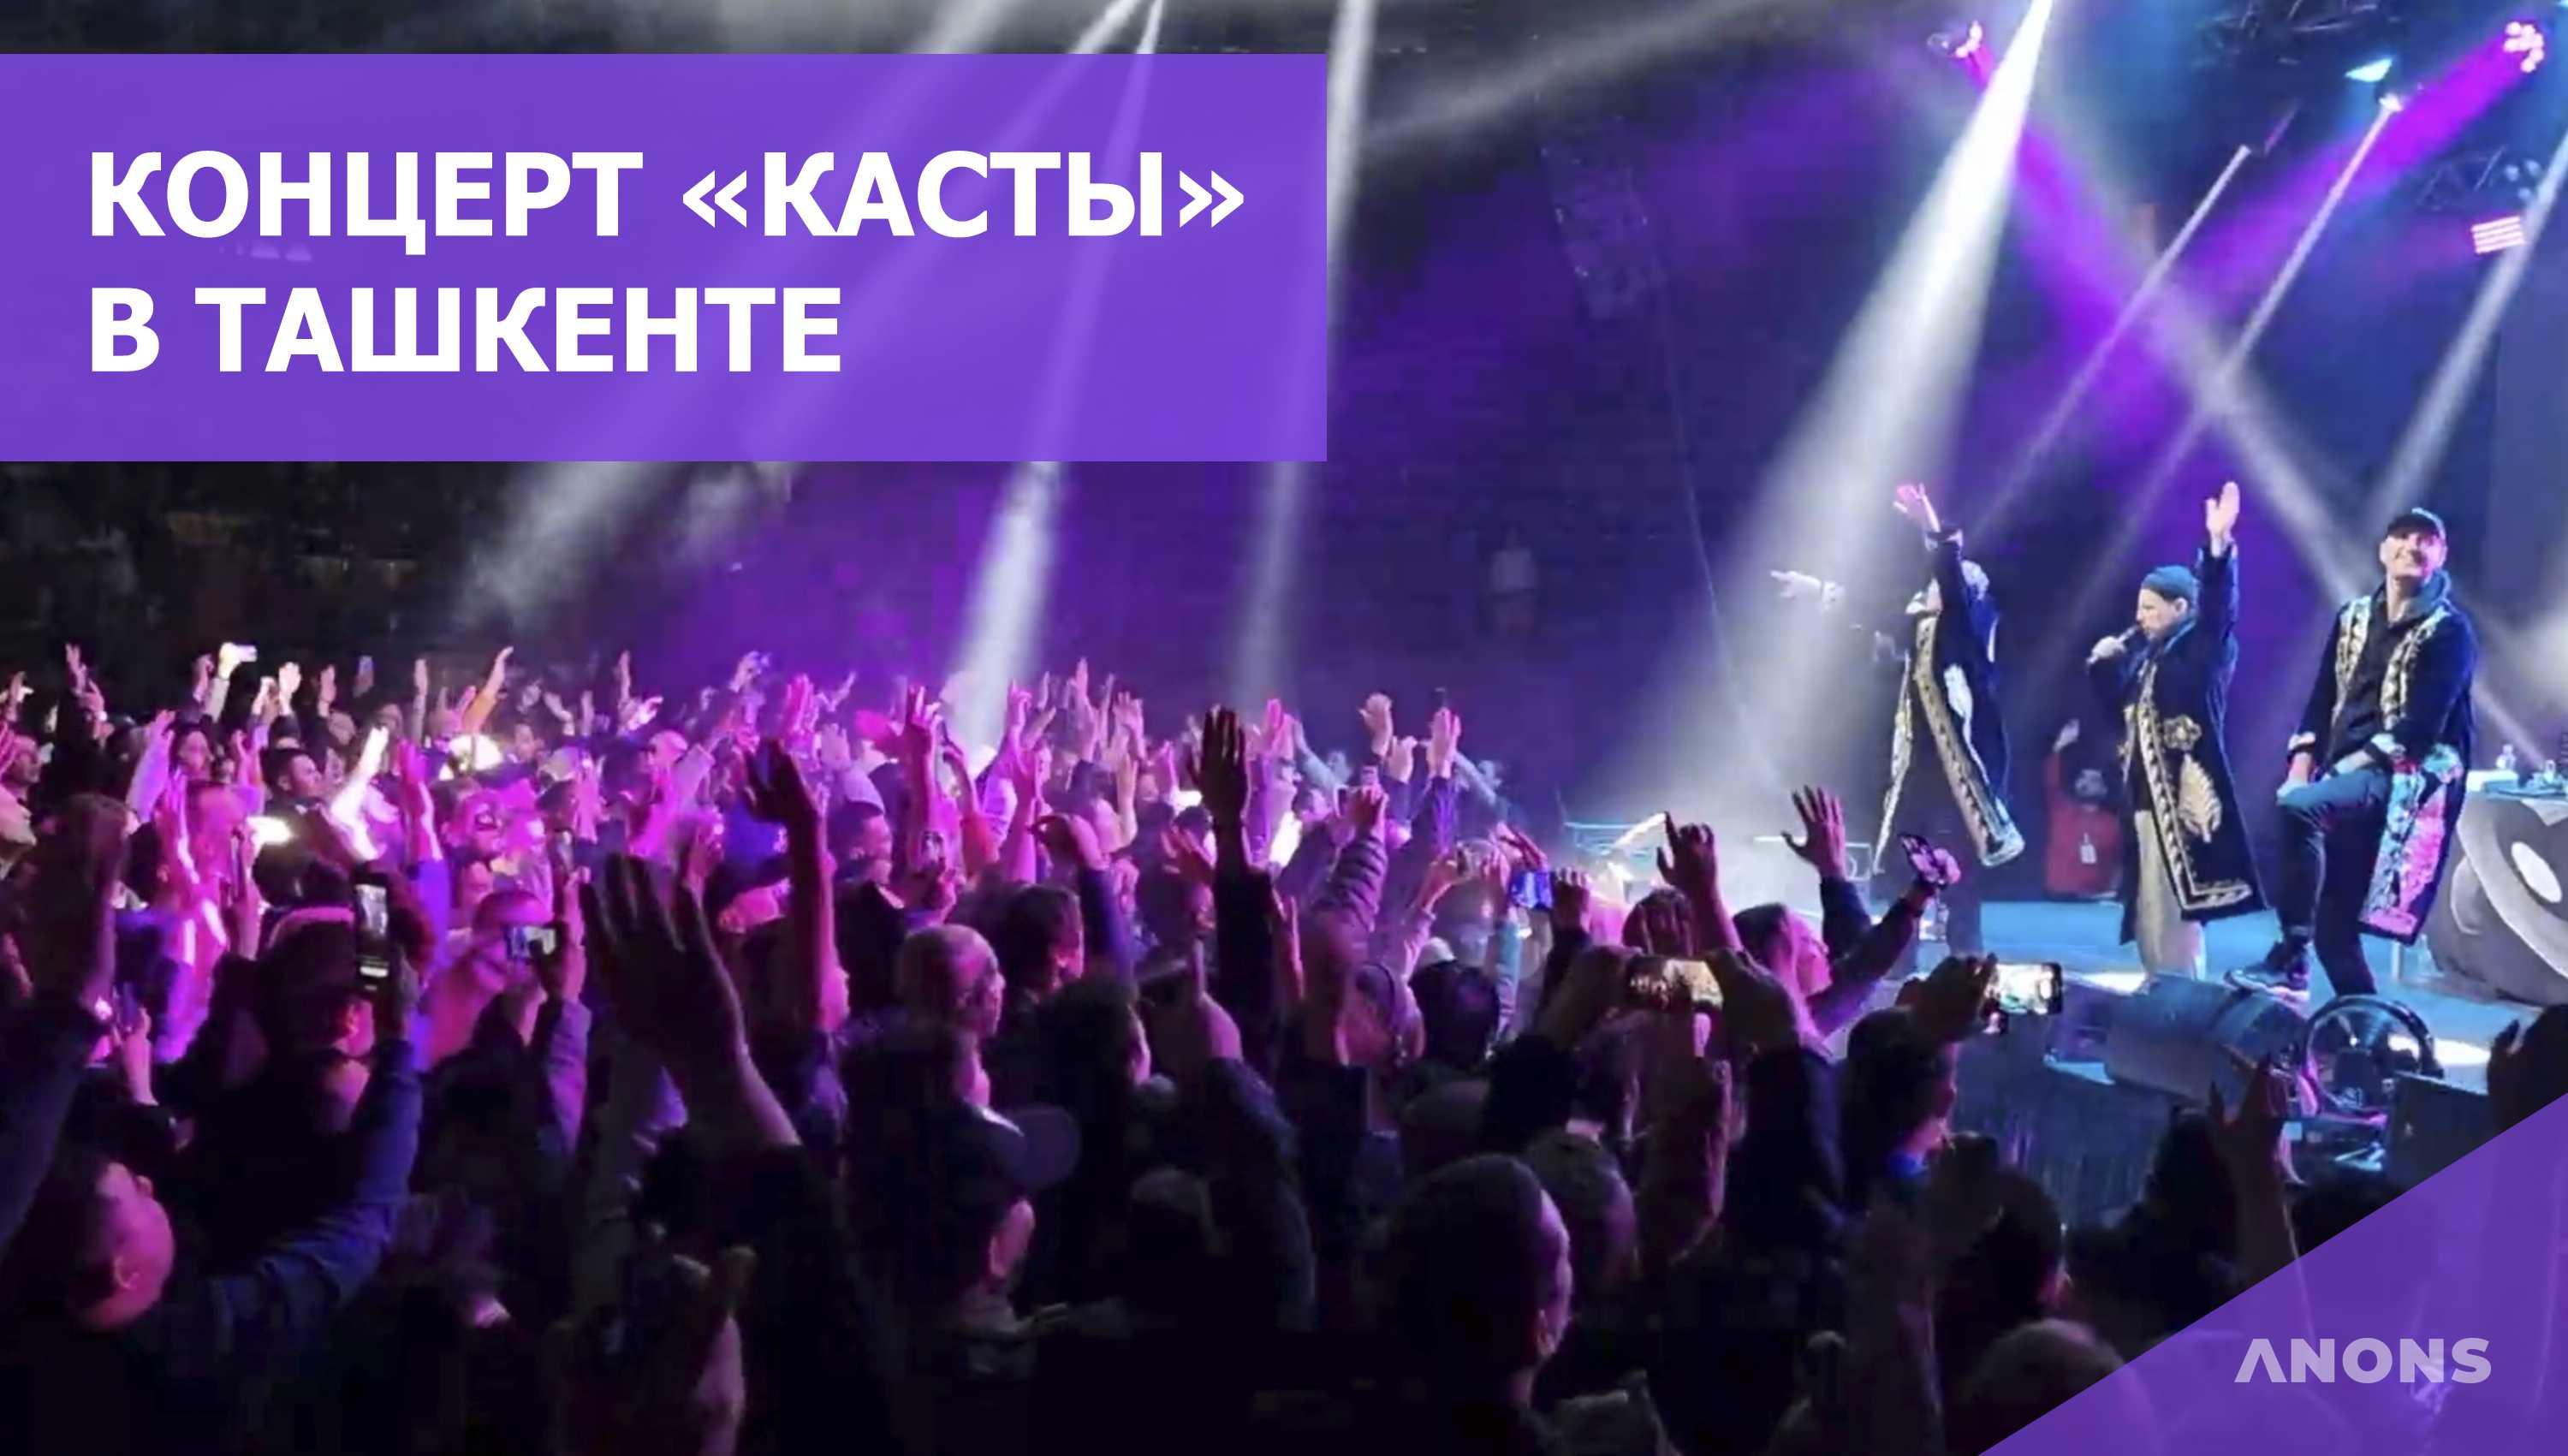 Вокруг шум: спустя 8 лет в Ташкенте состоялся концерт легендарной группы «Каста» – видео